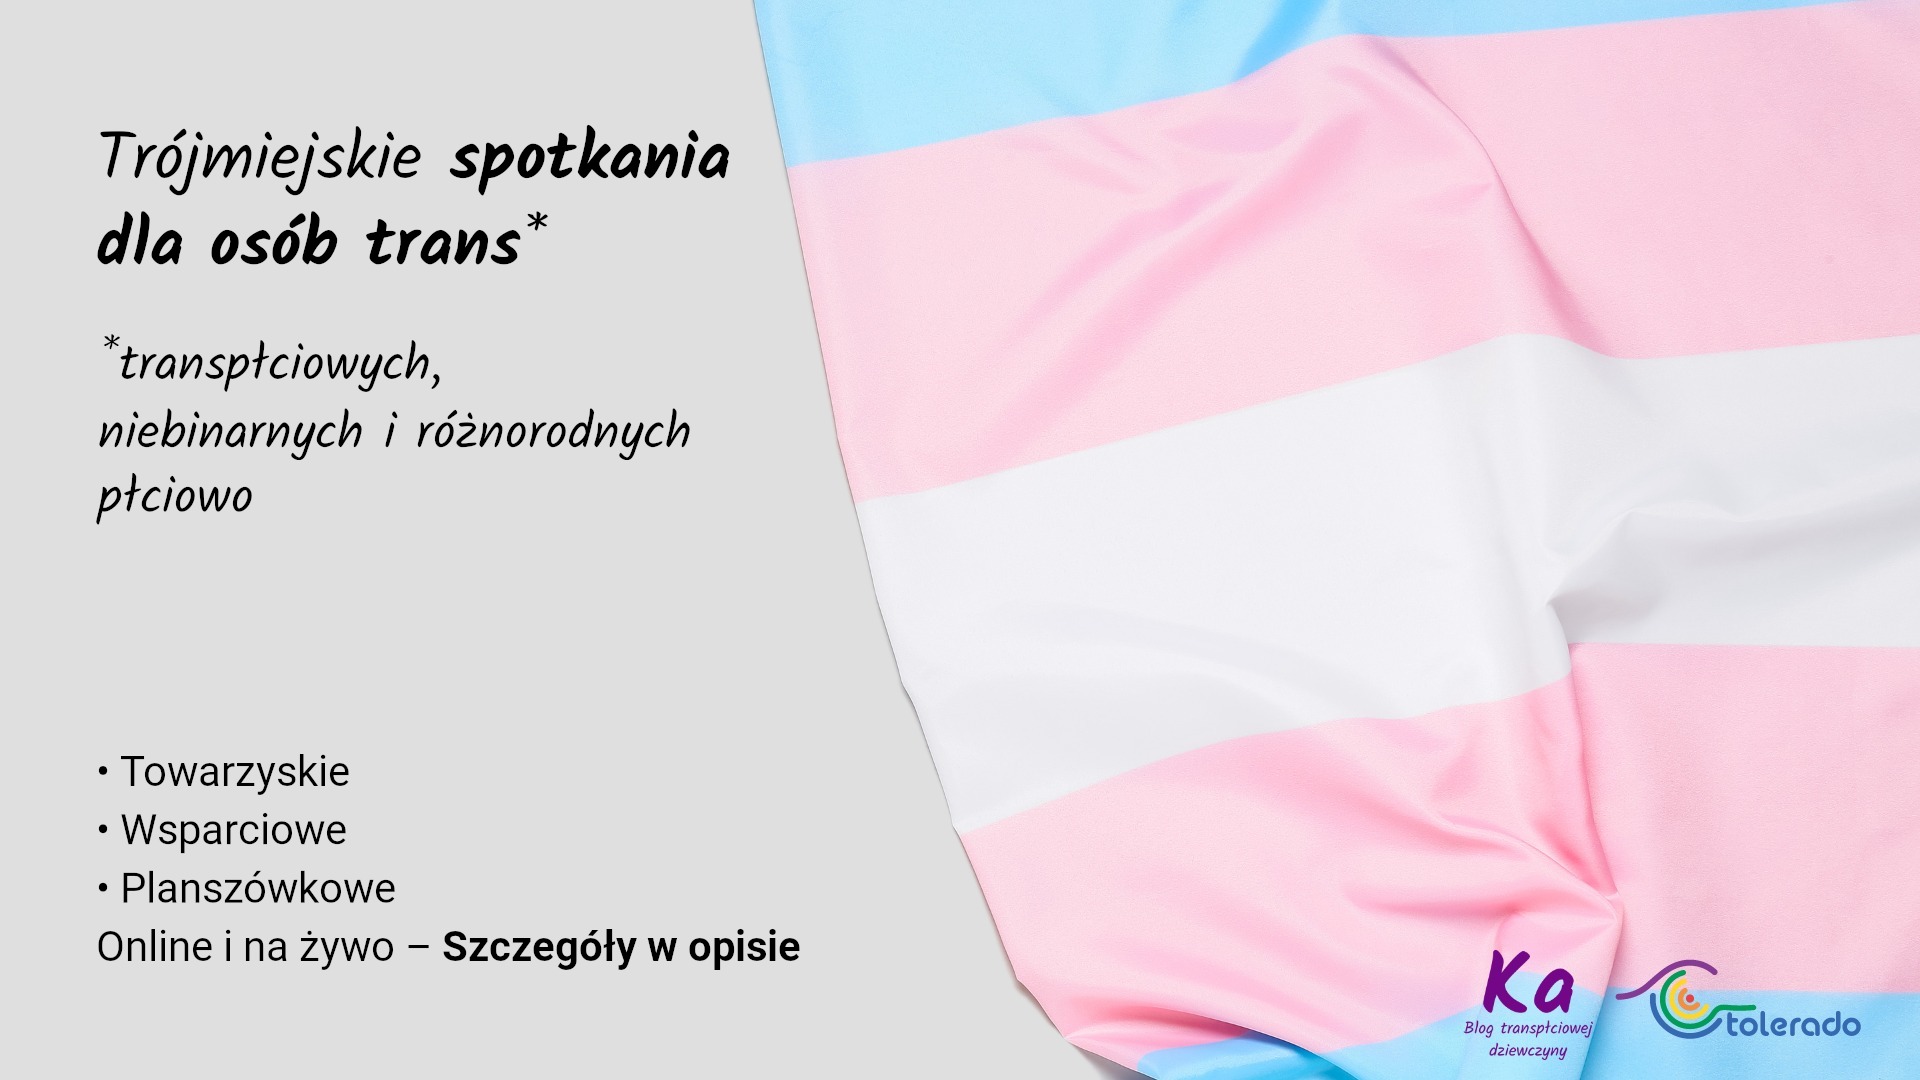 Październikowe spotkania dla osób trans!